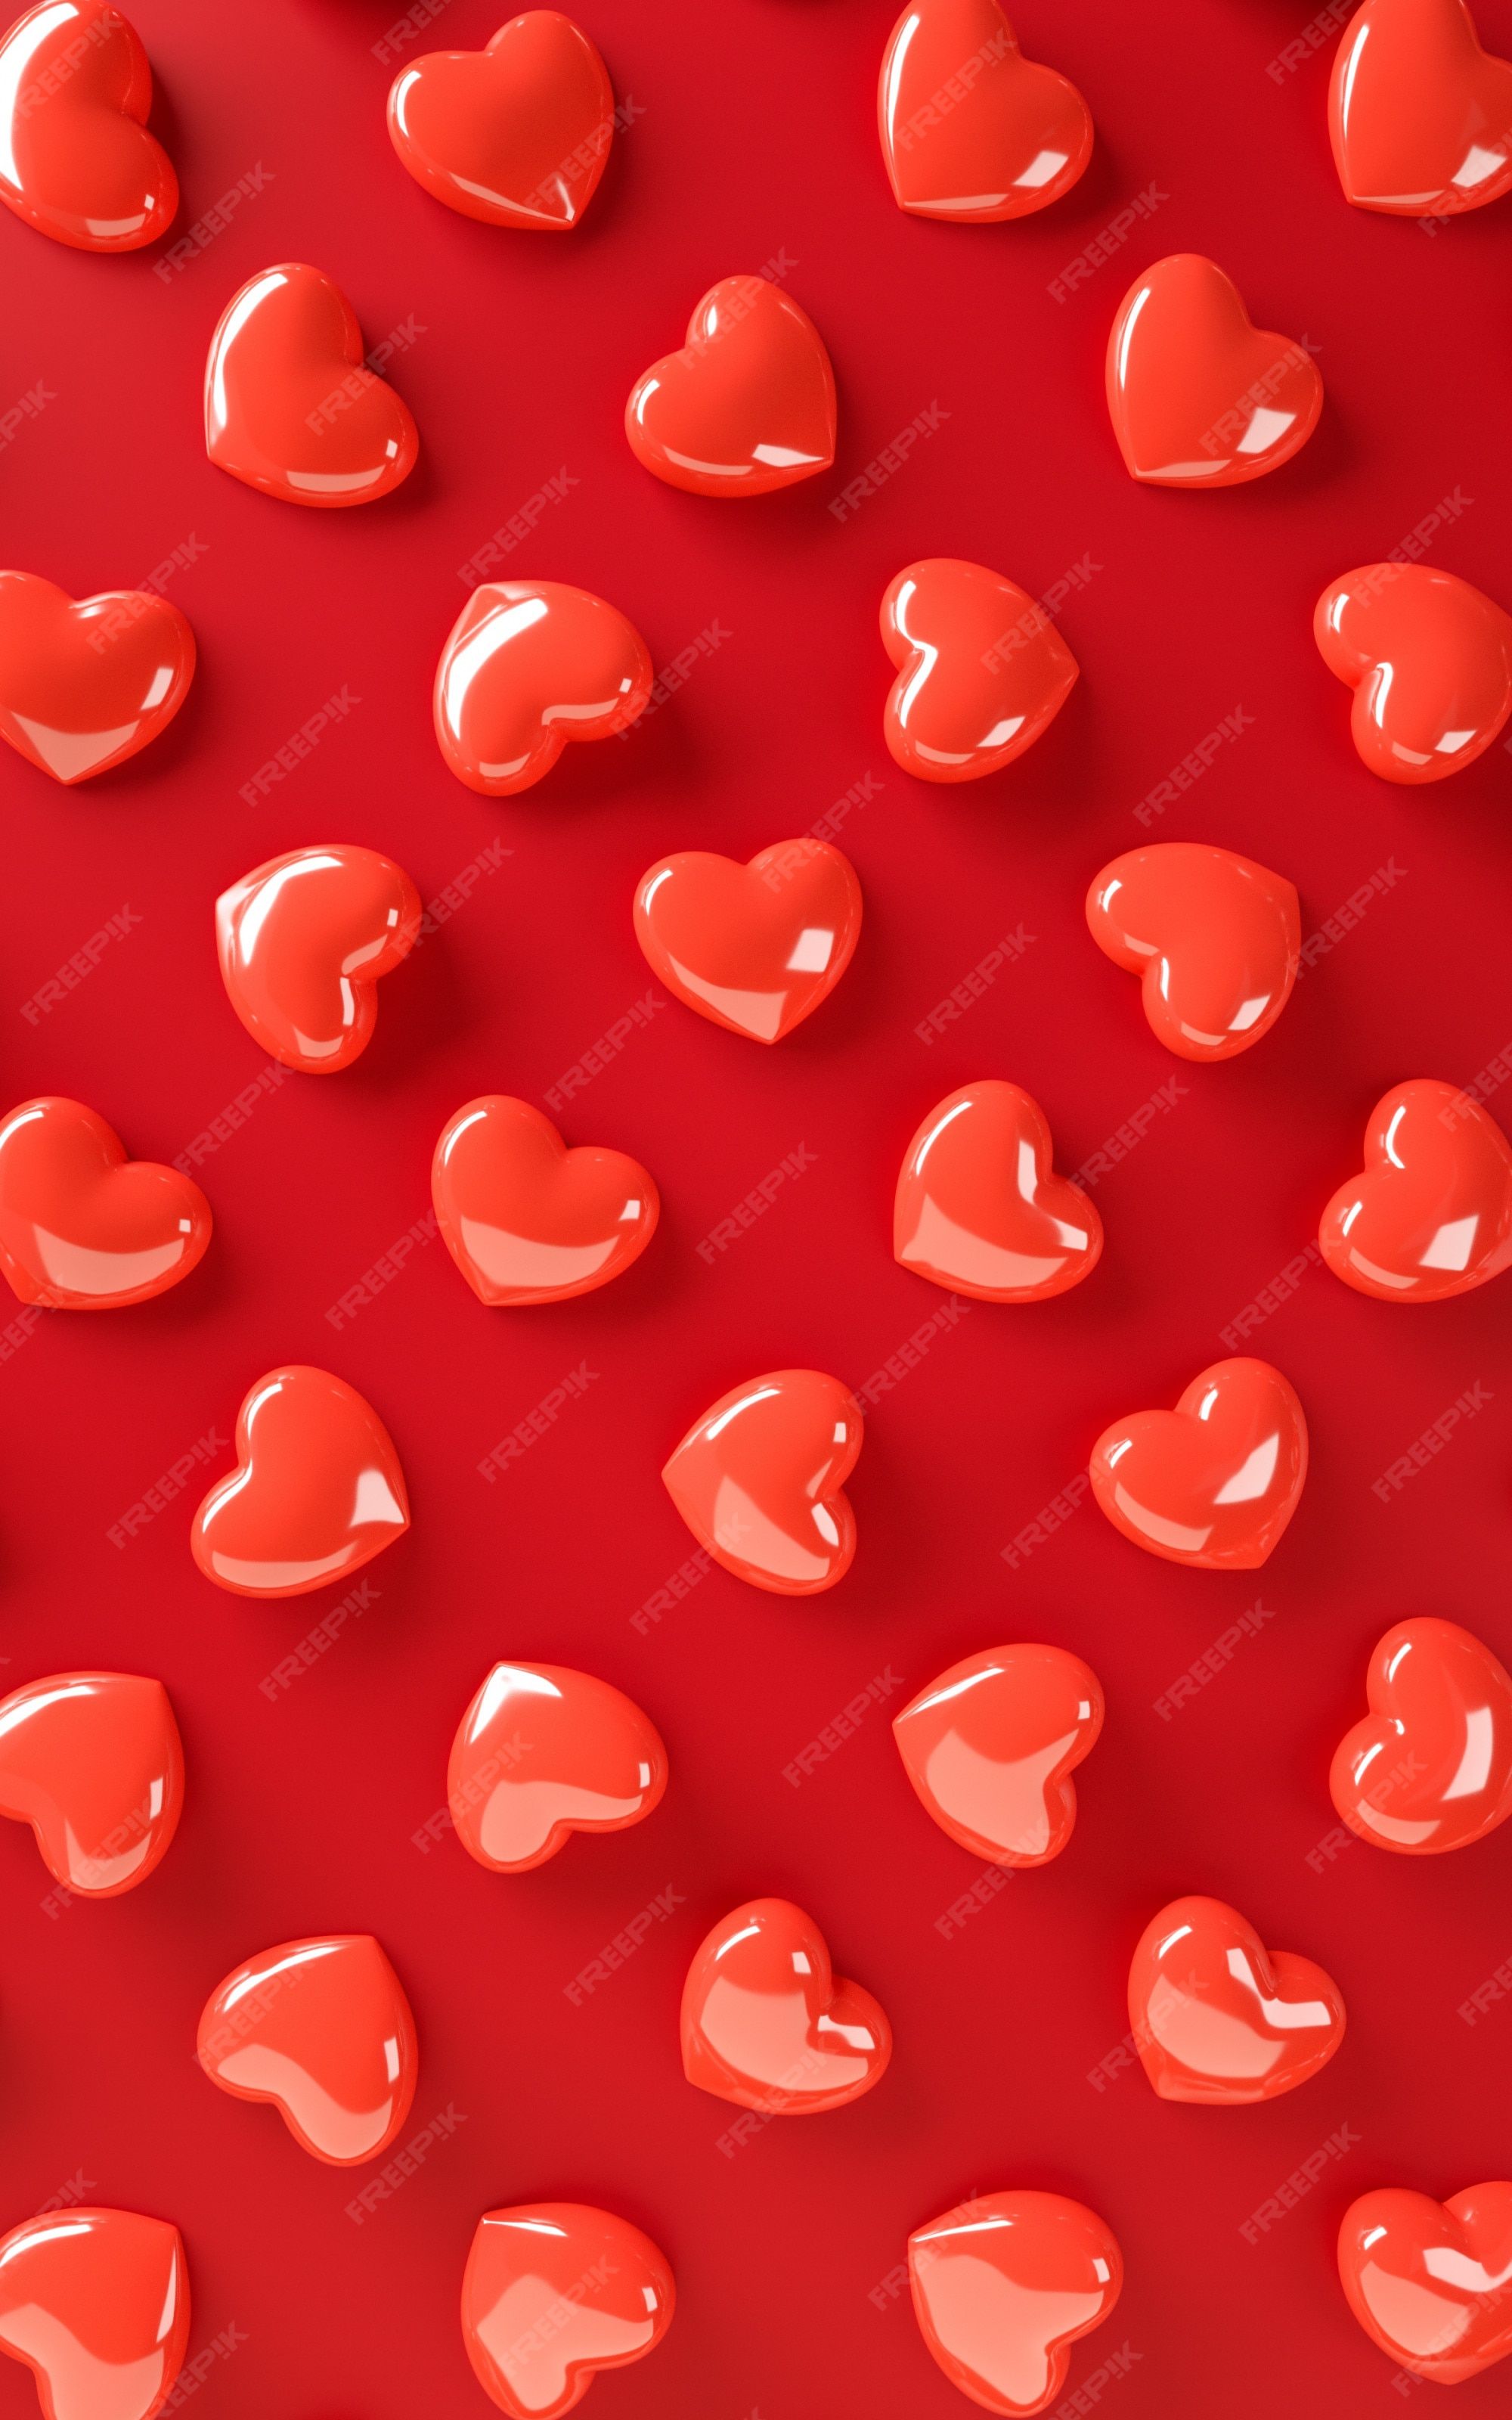  Valentinstag Hintergrundbild 2000x3200. Valentinstag herzen hintergrundmuster. fett rote farbe flach zu legen. lieben sie feiergrußkarte, plakat, fahnenschablone für wiedergabeillustration der partei 3D